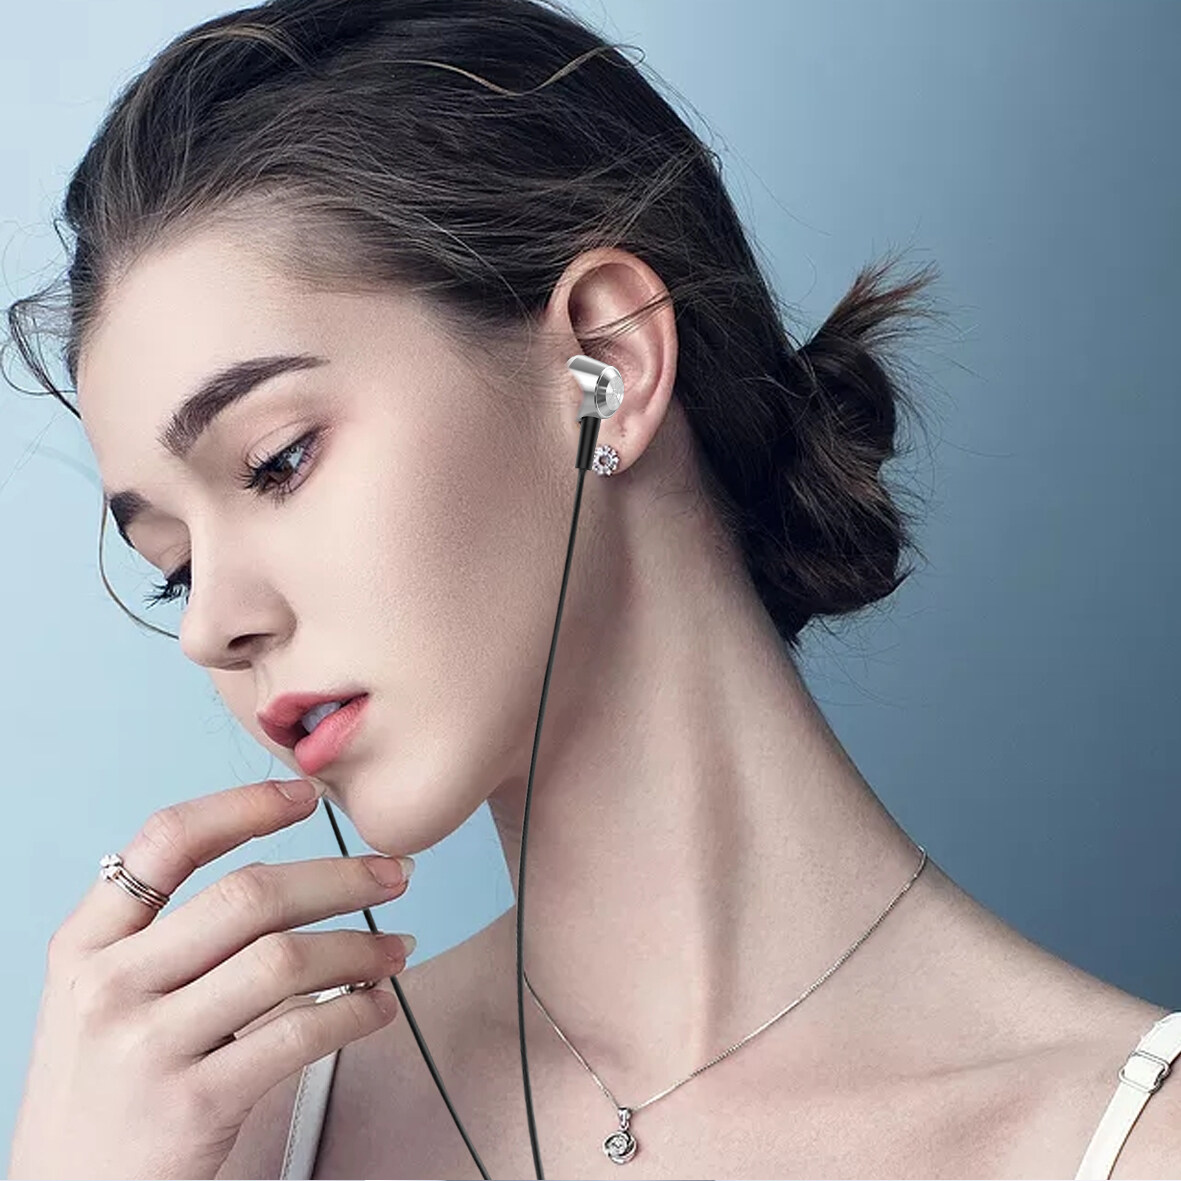 Happyudio; auriculares con cable de Amazon; Fabricantes de auriculares con cable; auriculares OEM; Auriculares al por mayor;